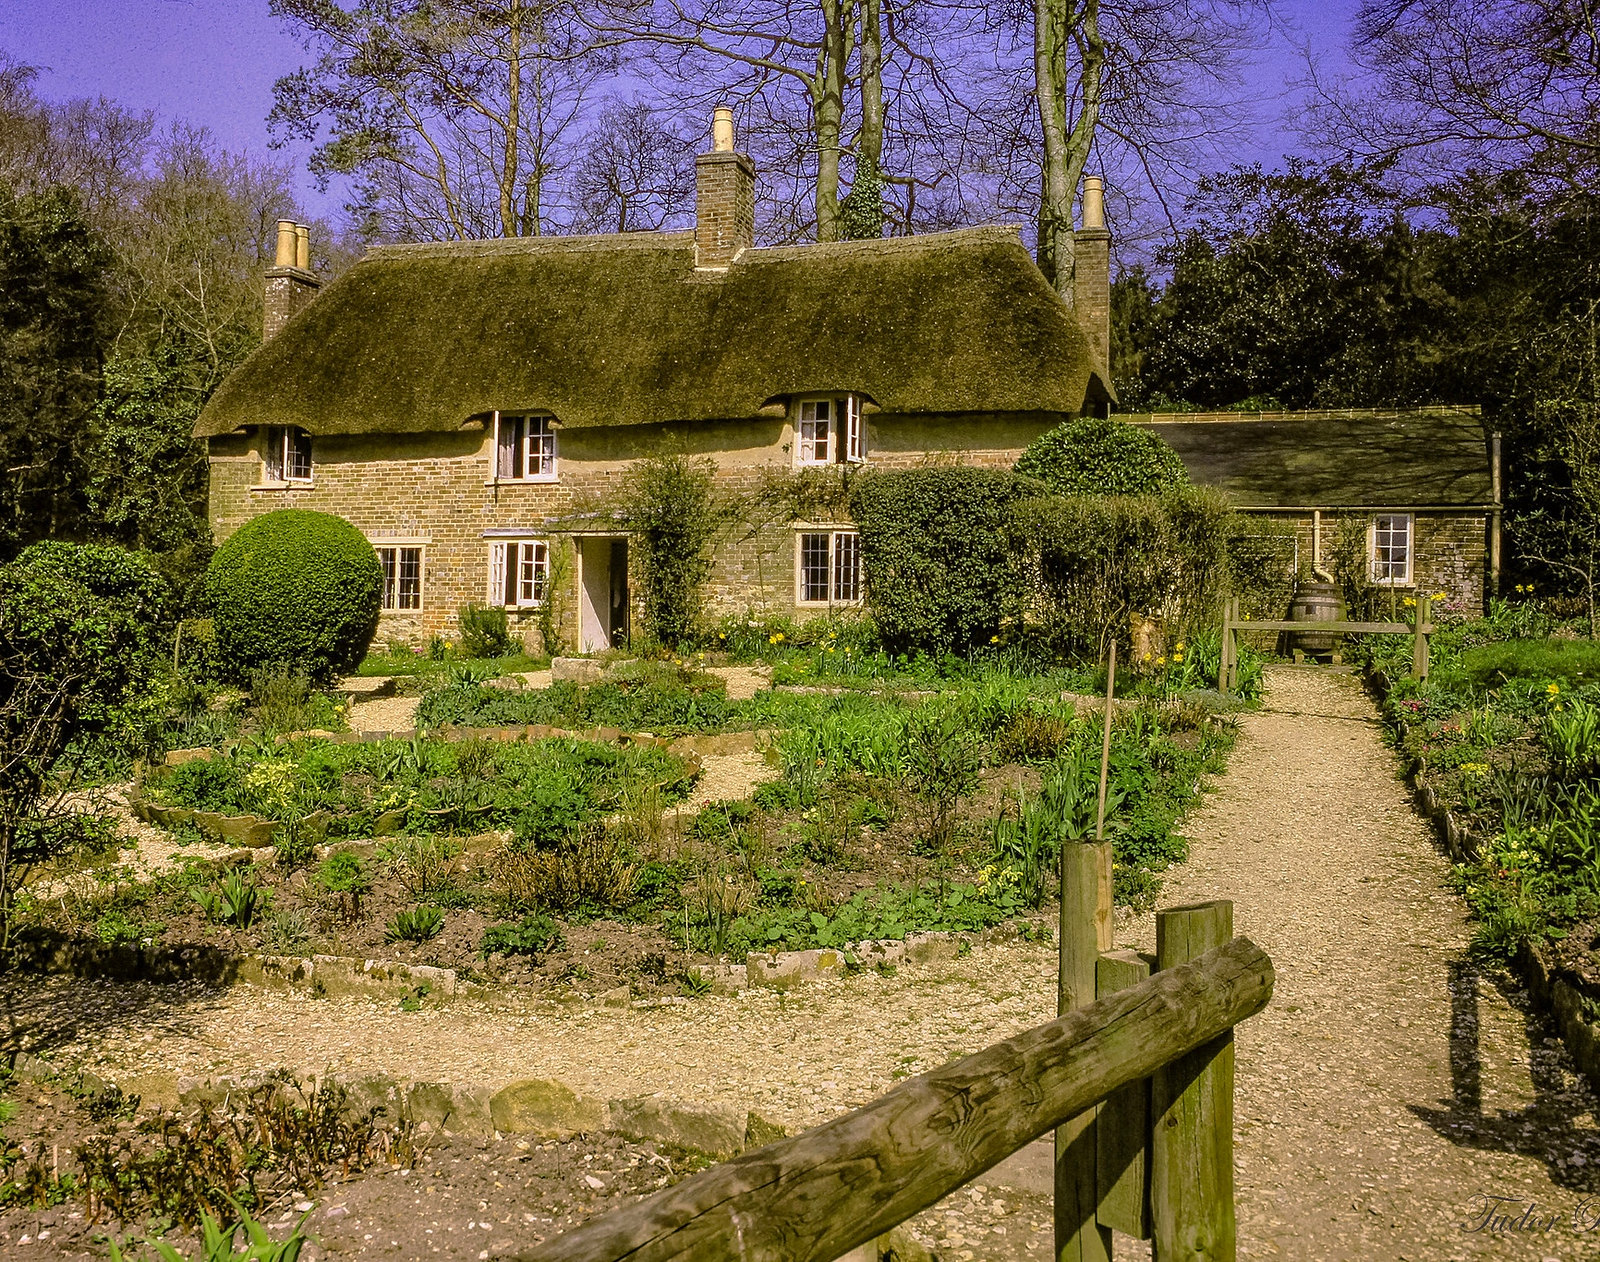 Thomas Hardy's Cottage, Dorchester, Dorset. Credit Tudor Barker, flickr